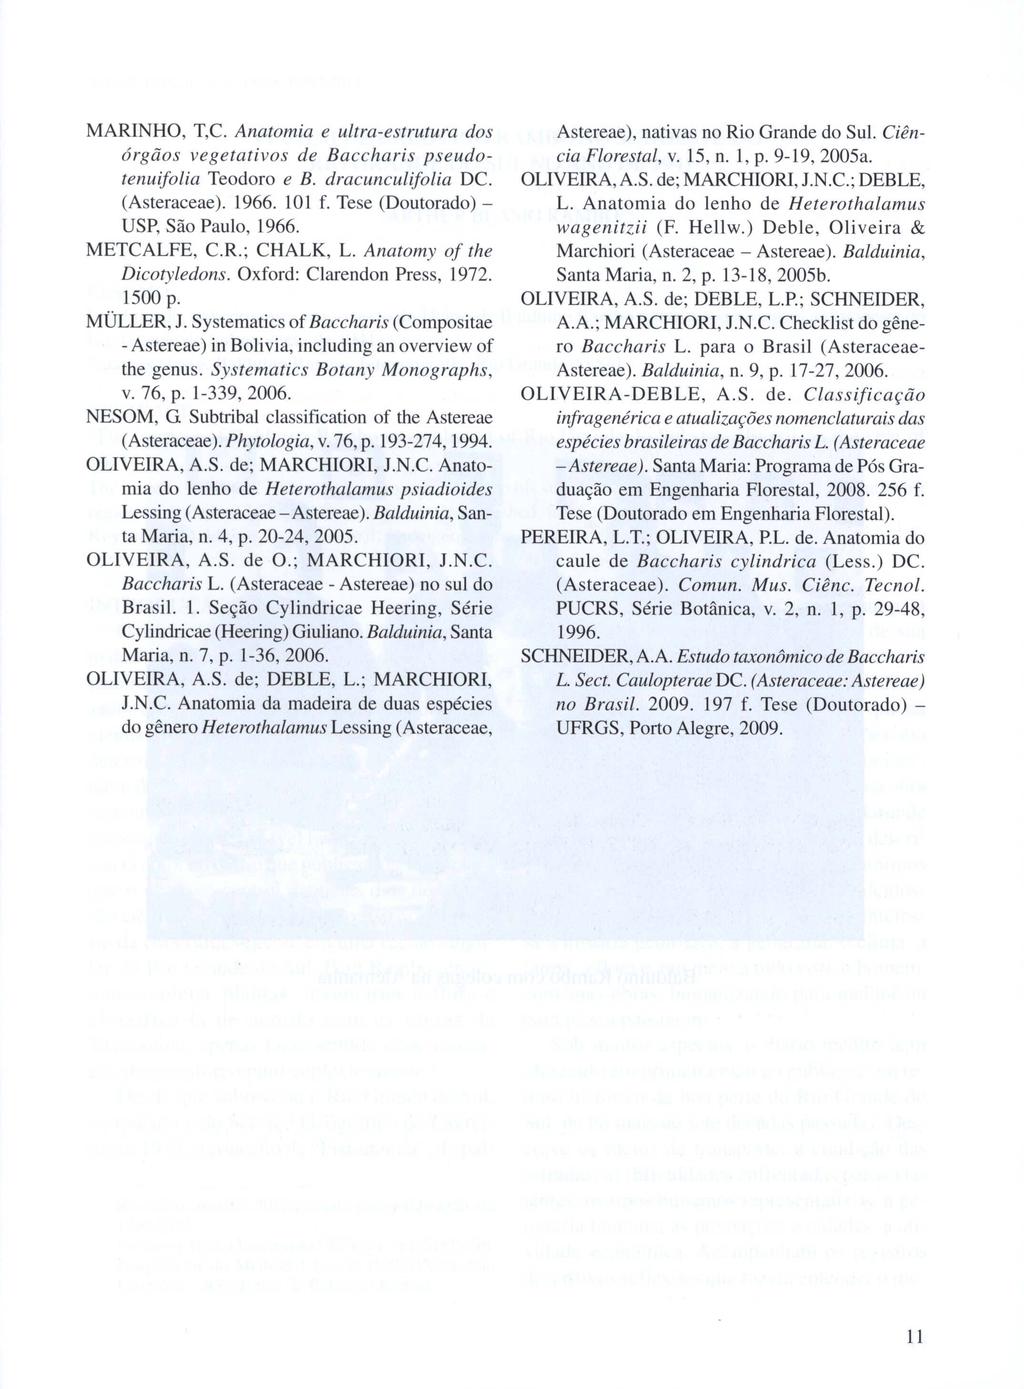 MARINHO, T,e. Anatomia e ultra-estrutura dos órgãos vegetativos de Baccharis pseudotenuifolia Teodoro e B. dracunculifolia DC. (Asteraceae). 1966. 101 f. Tese (Doutorado) - USP, São Paulo, 1966.